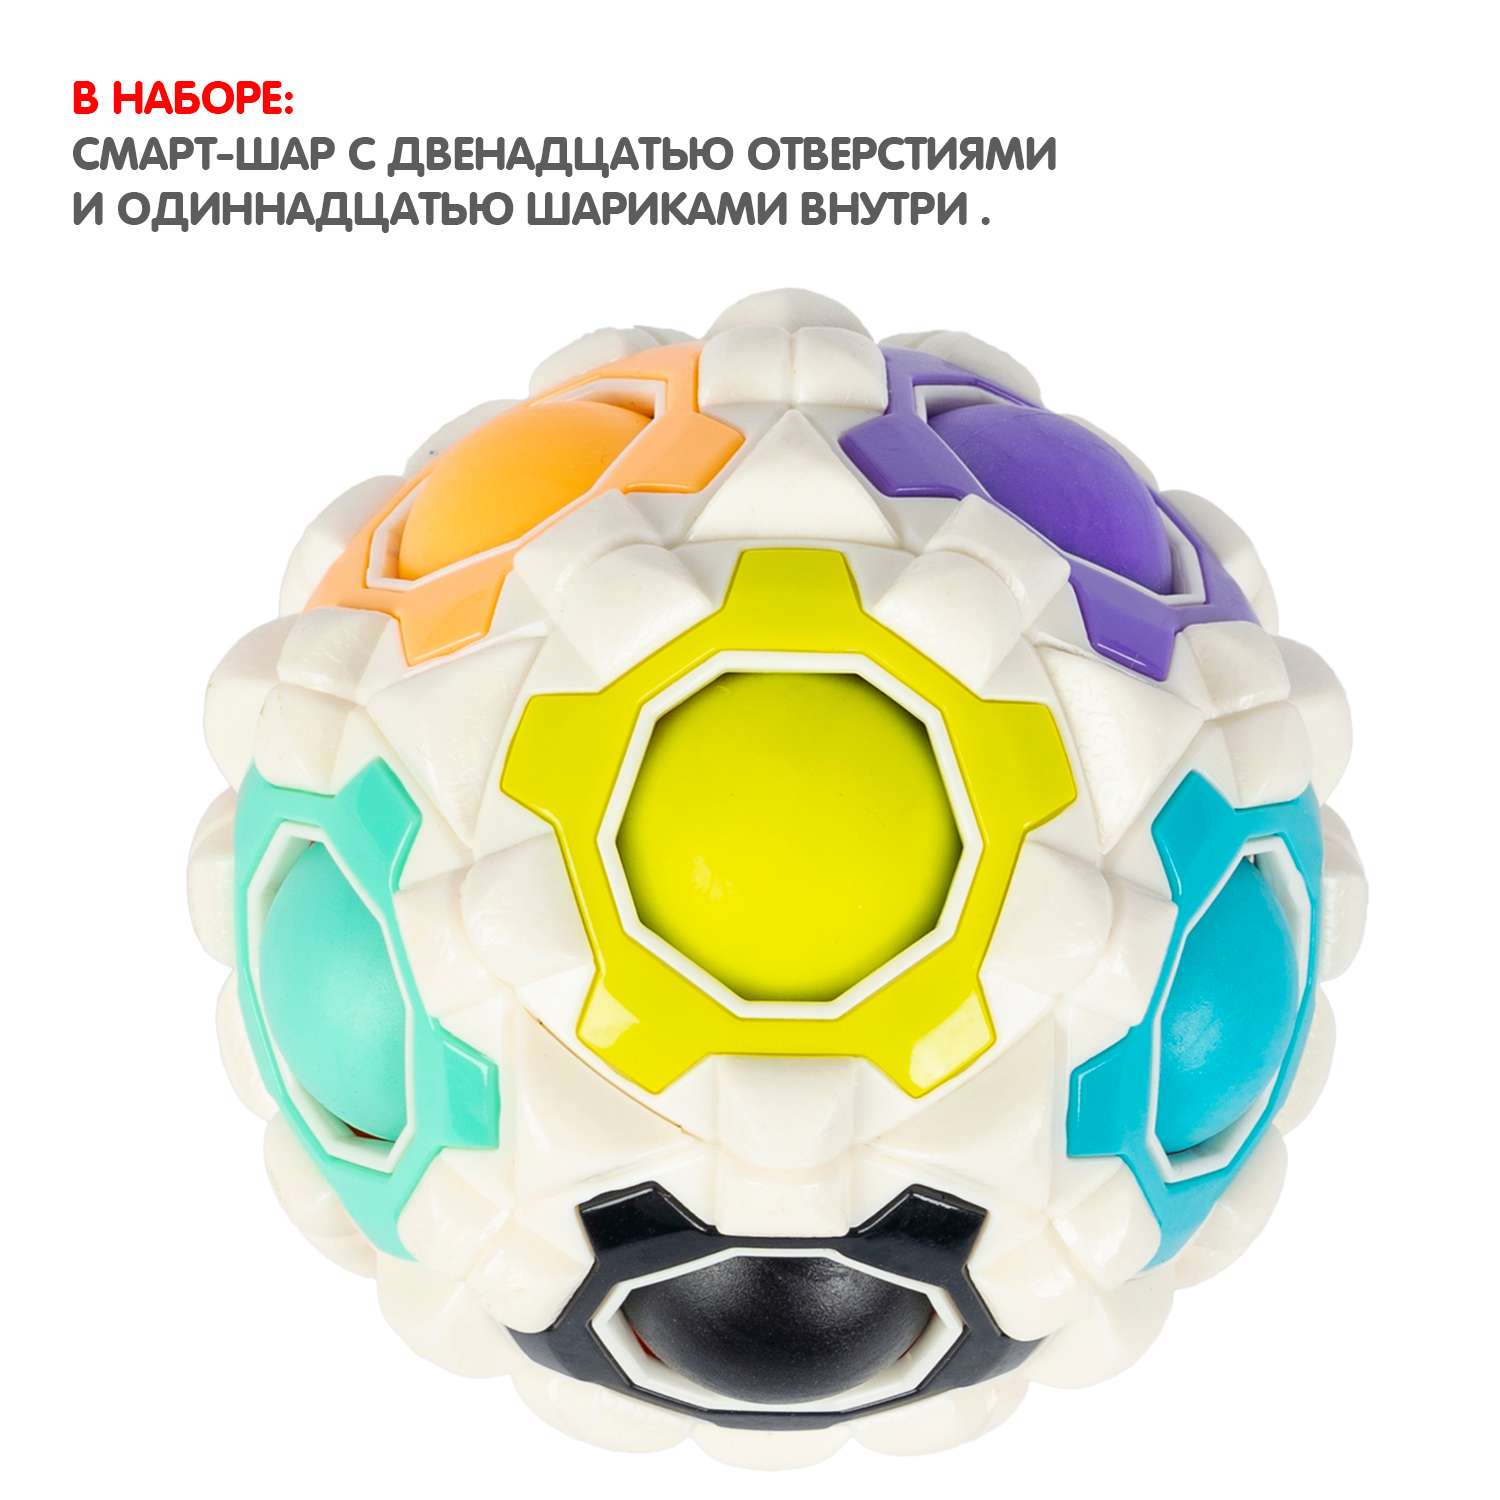 Развивающая головоломка BONDIBON SMART шар 2в1 игрушка - массажер белого цвета - фото 8